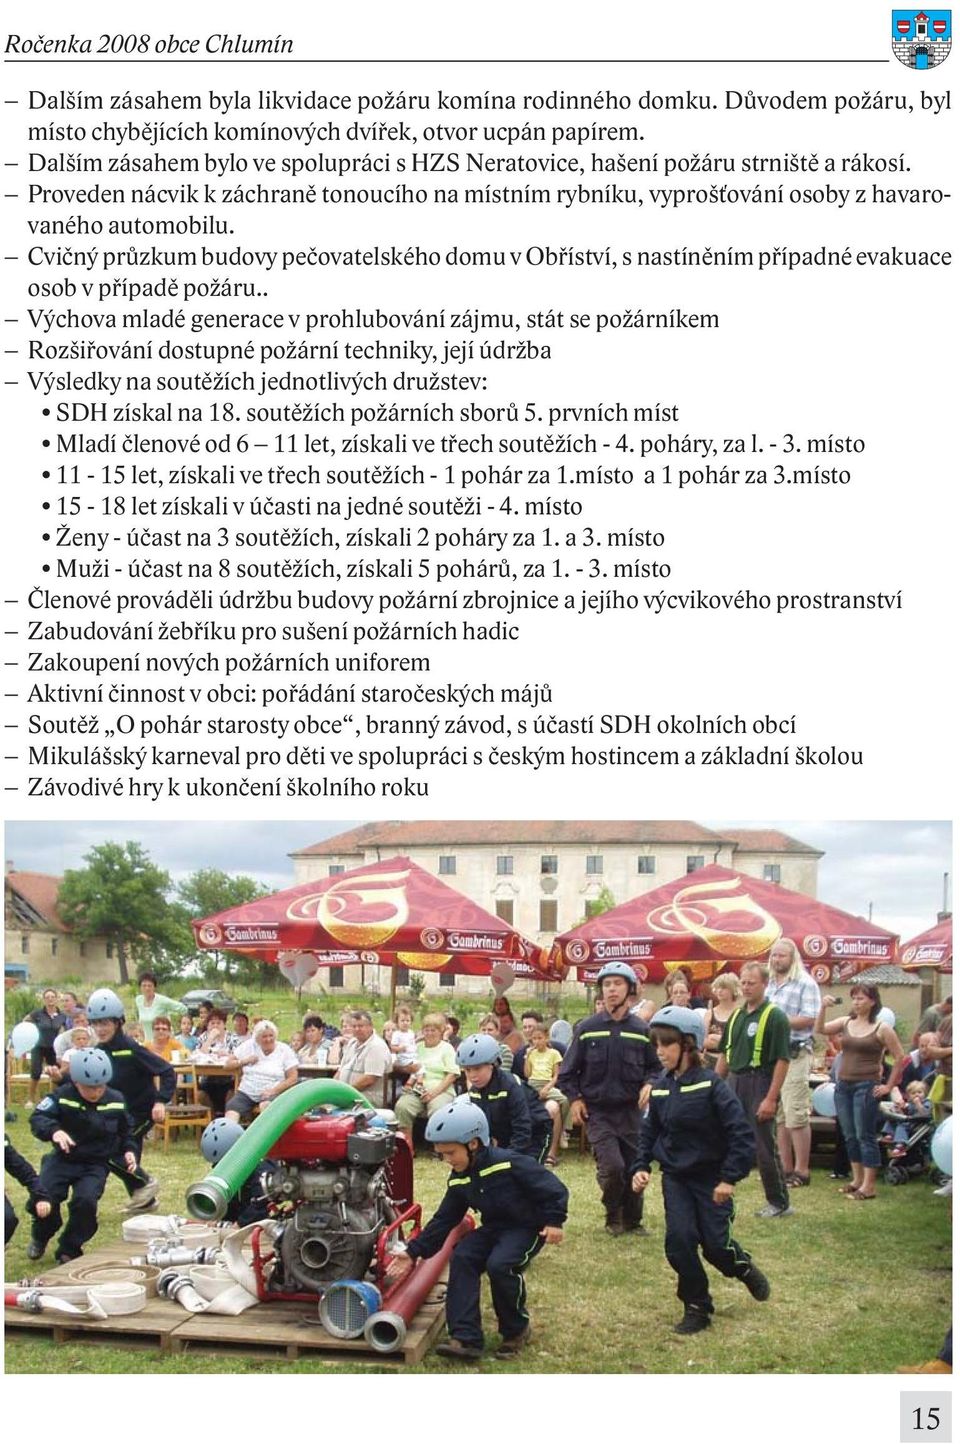 Cvičný průzkum budovy pečovatelského domu v Obříství, s nastíněním případné evakuace osob v případě požáru.